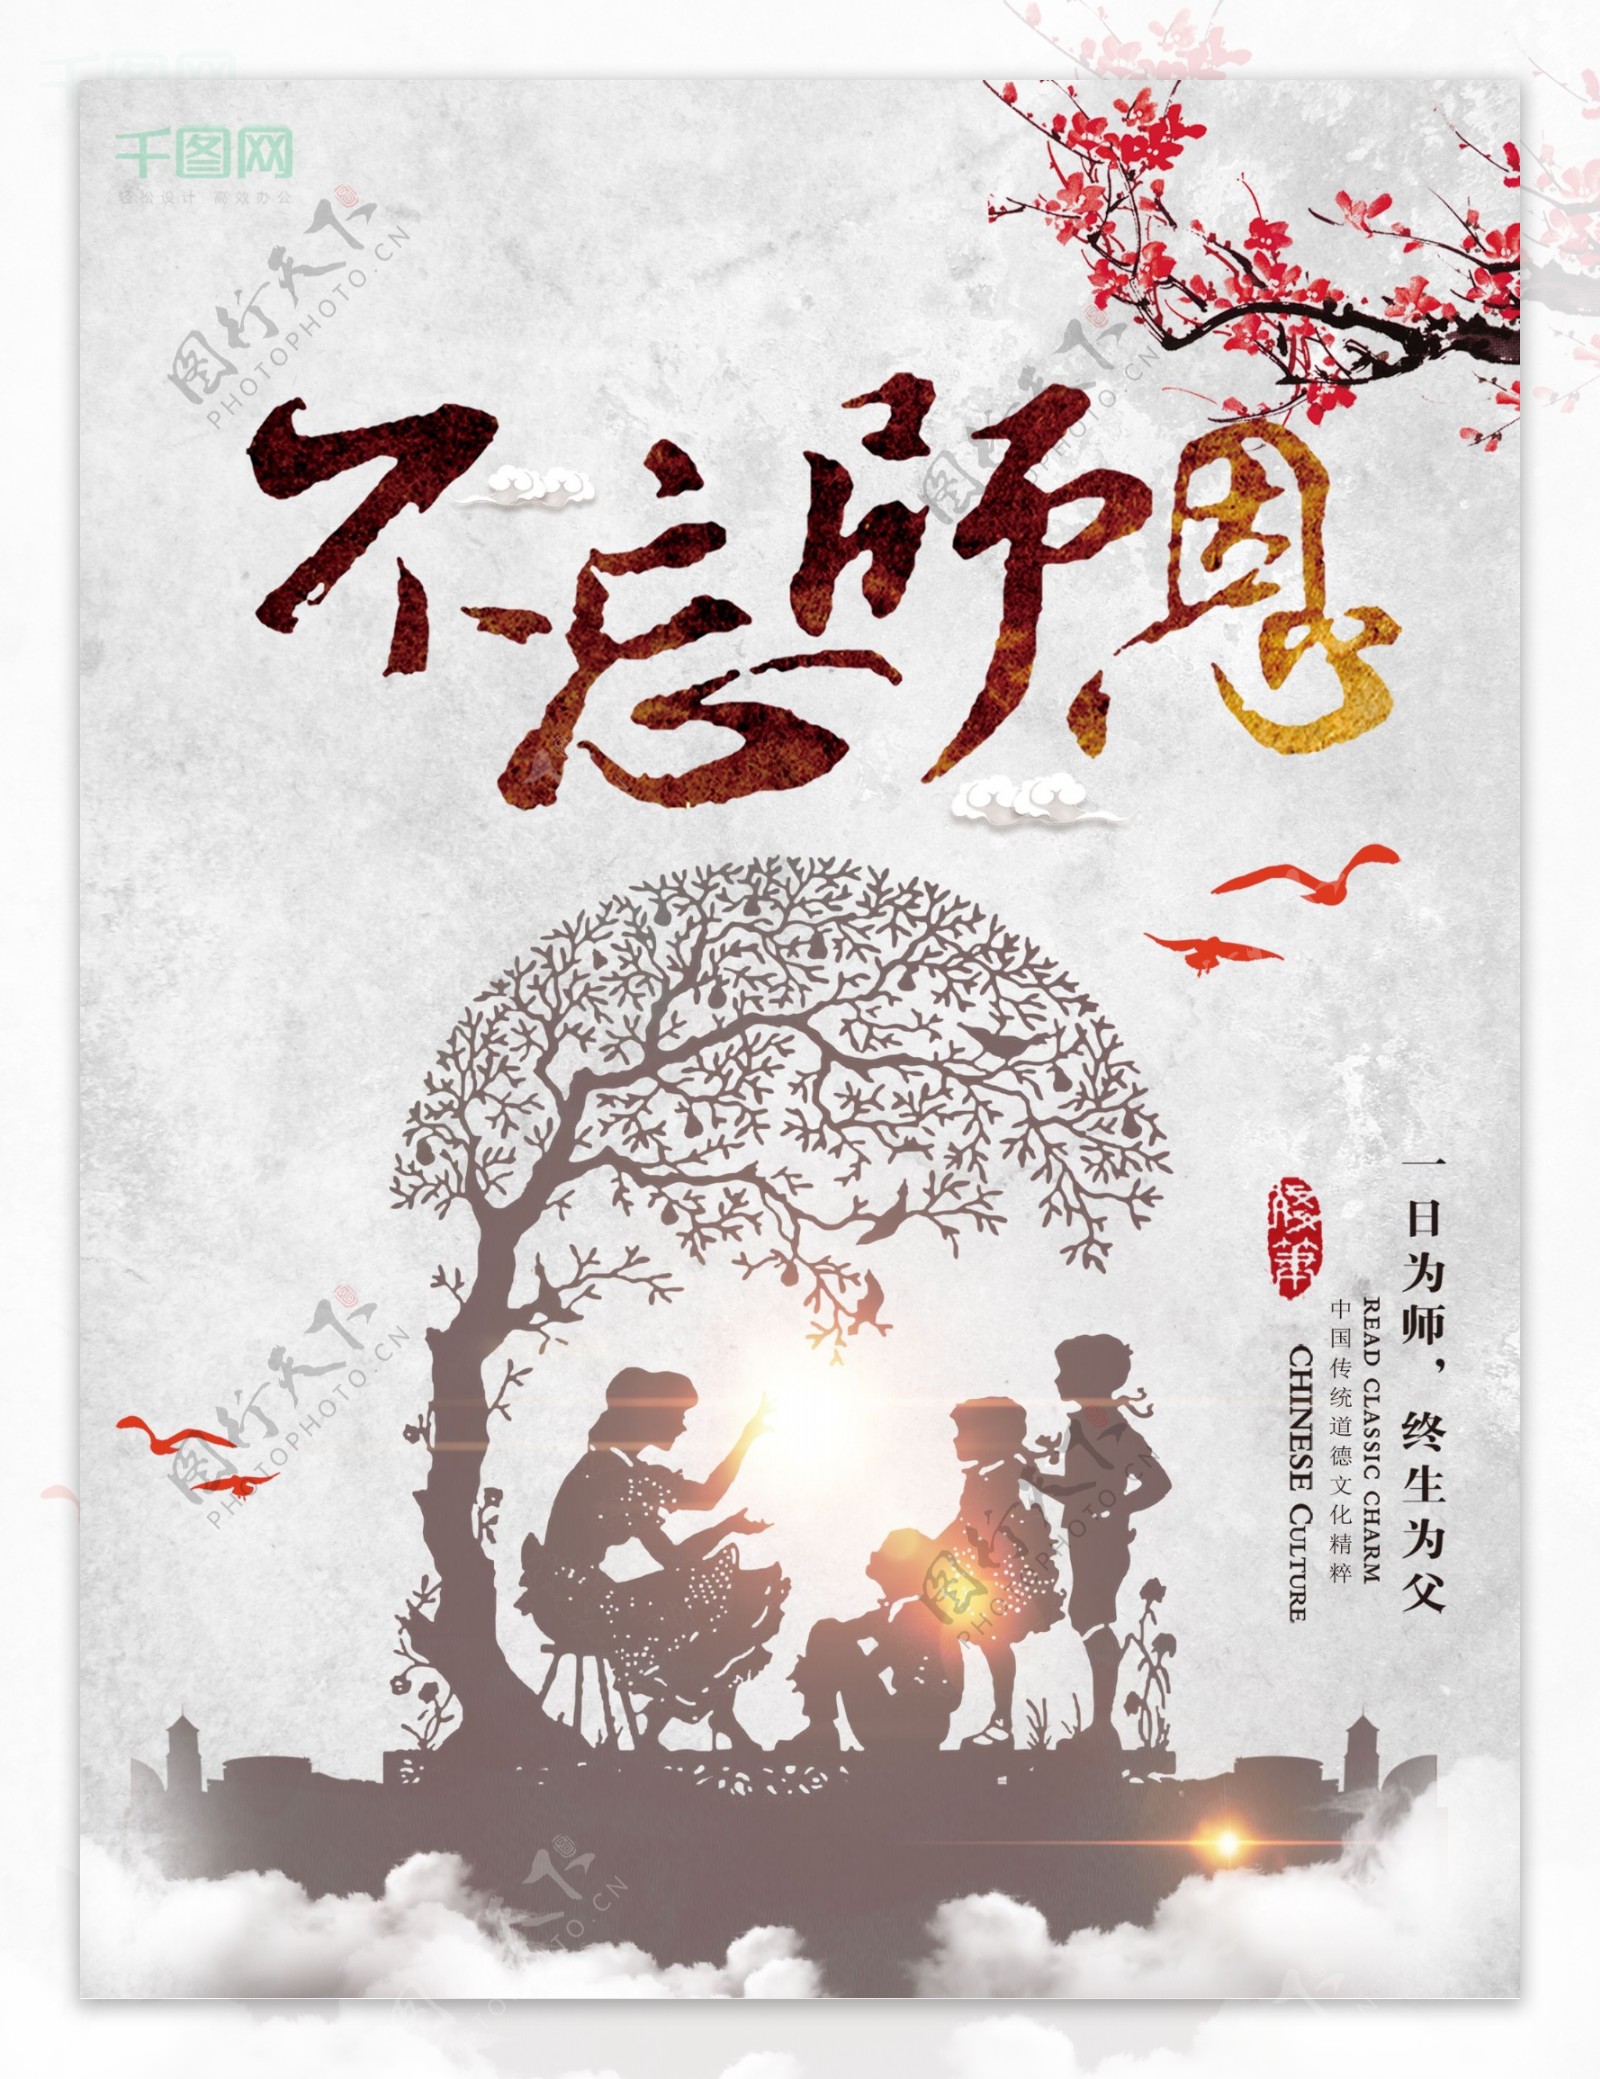 灰色水墨风中国风教师节文化创意节日海报